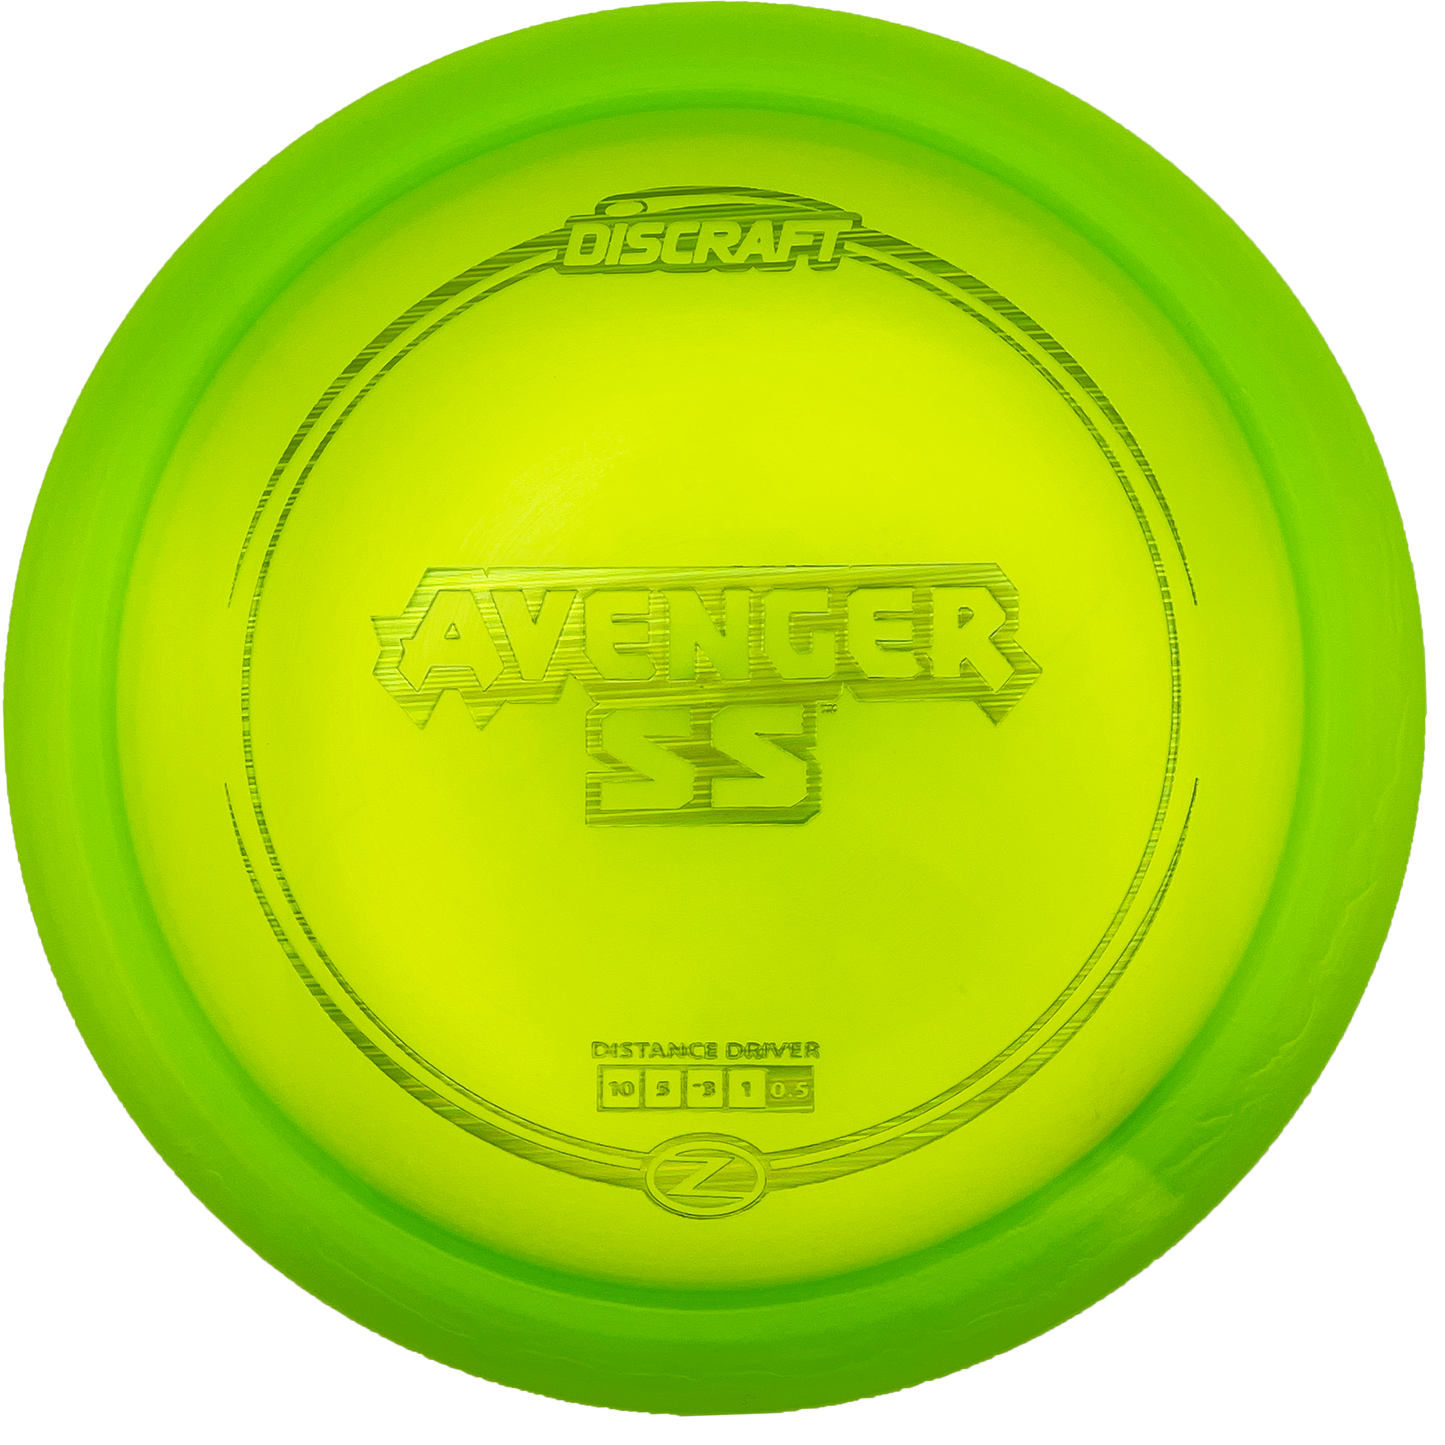 Discraft Avenger SS - Z Line - Green